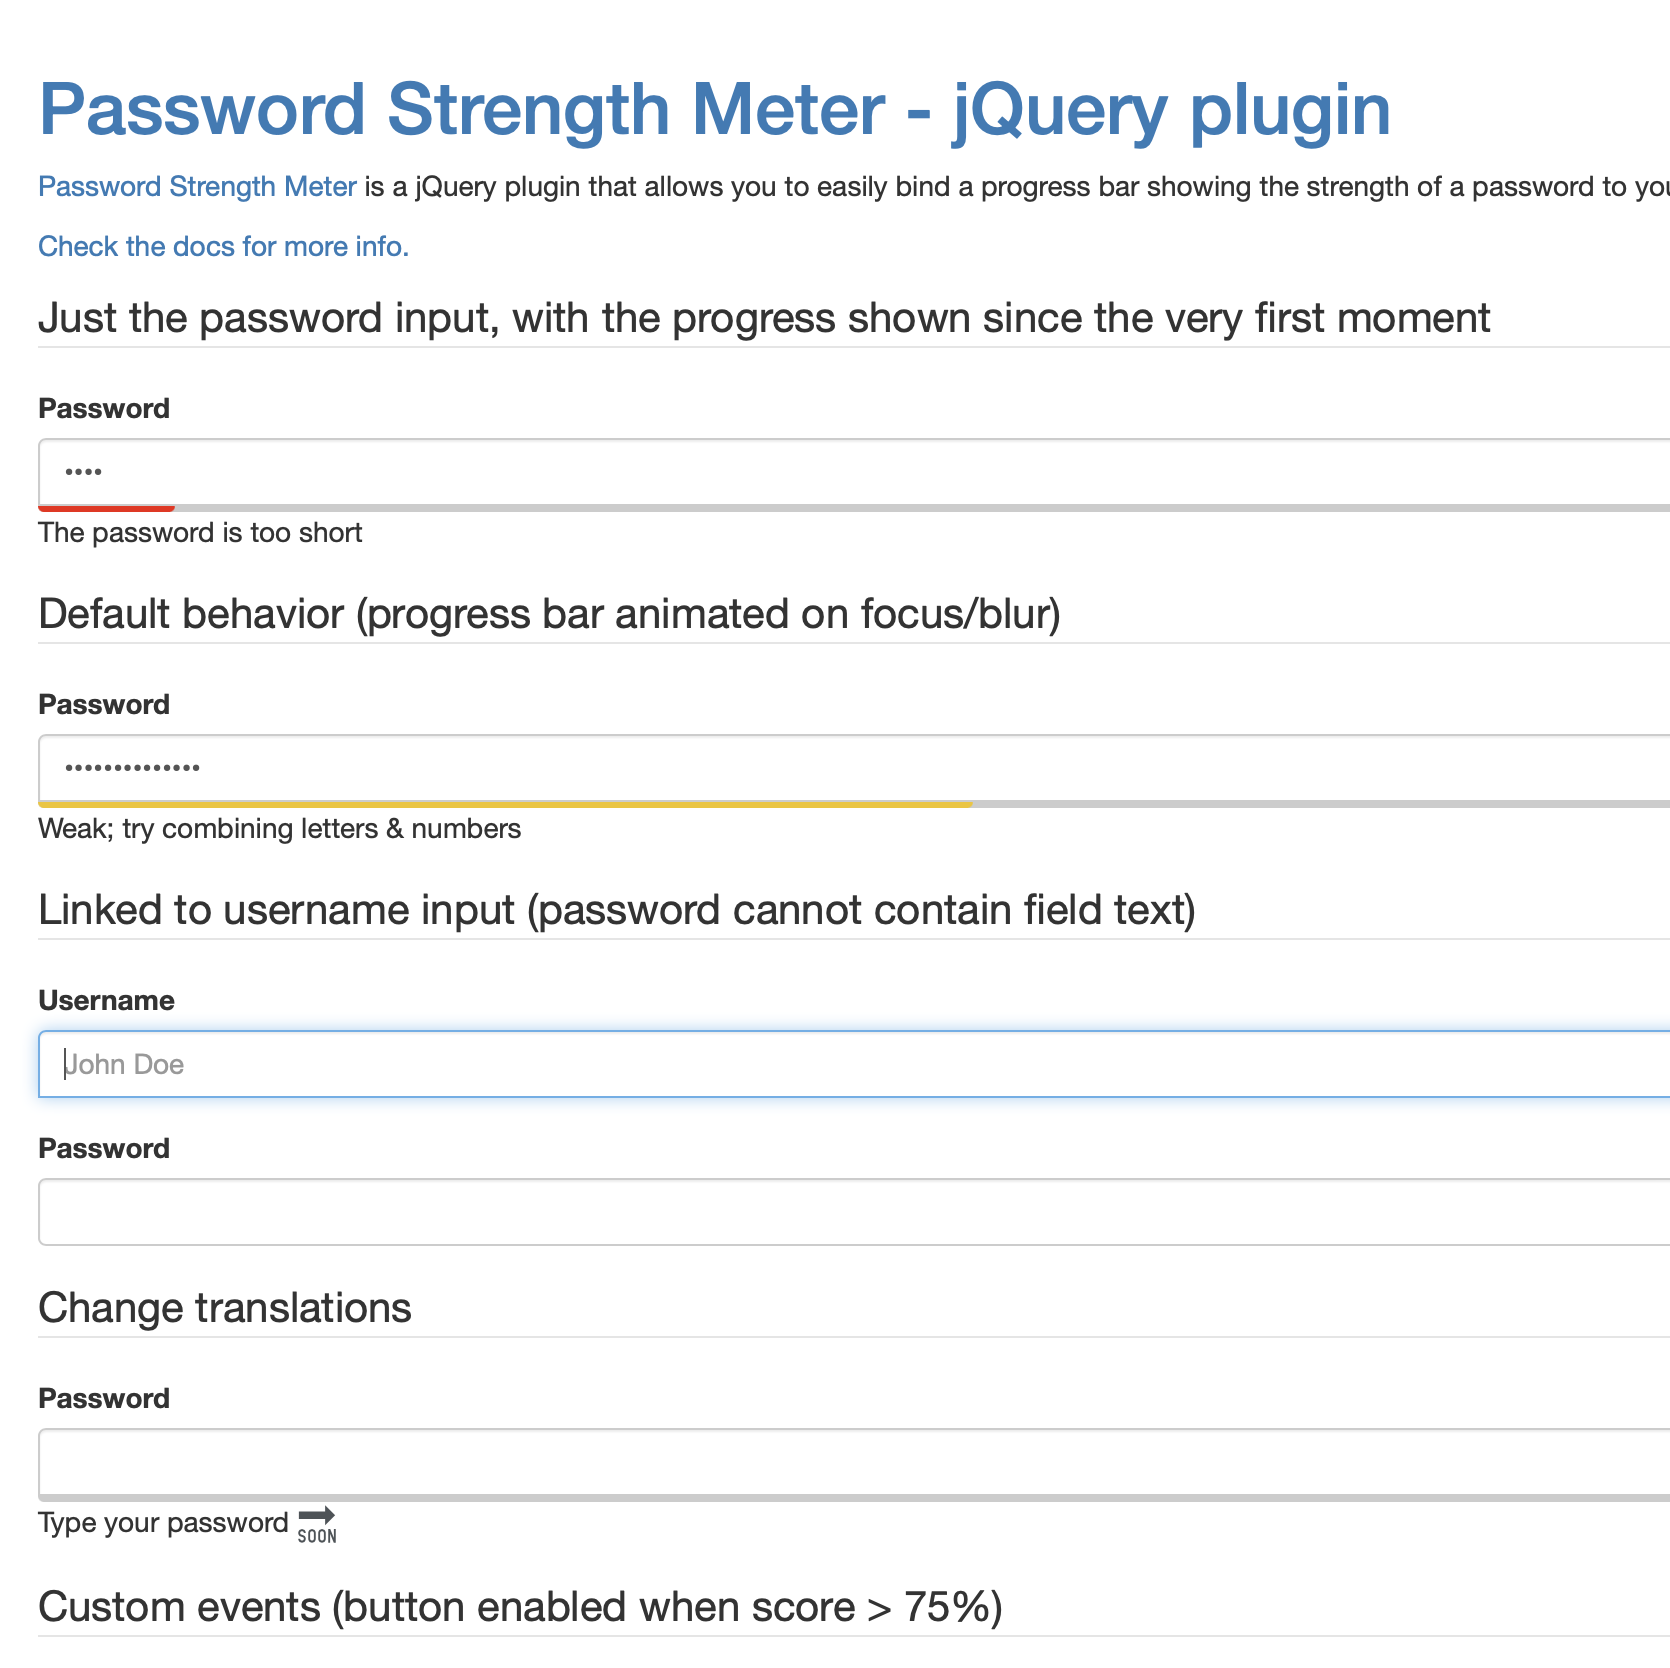 Password Strength Meter Image